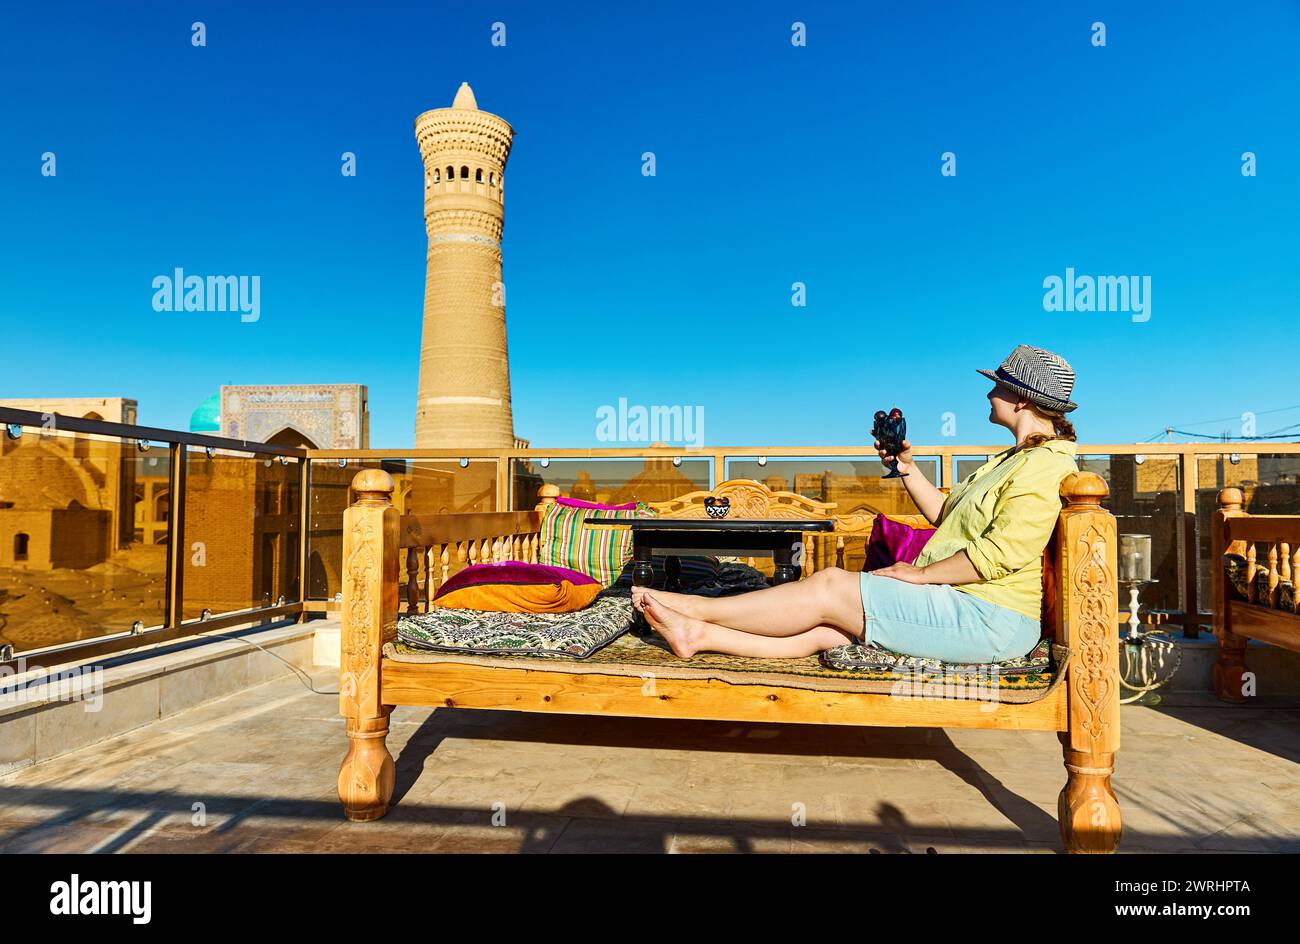 Frau mit Klasse voller Feigen am Tischbett Topchan im Dachrestaurant in Buchara in der Nähe des Kalyan Minarets und der Madrasah in Usbekistan Stockfoto